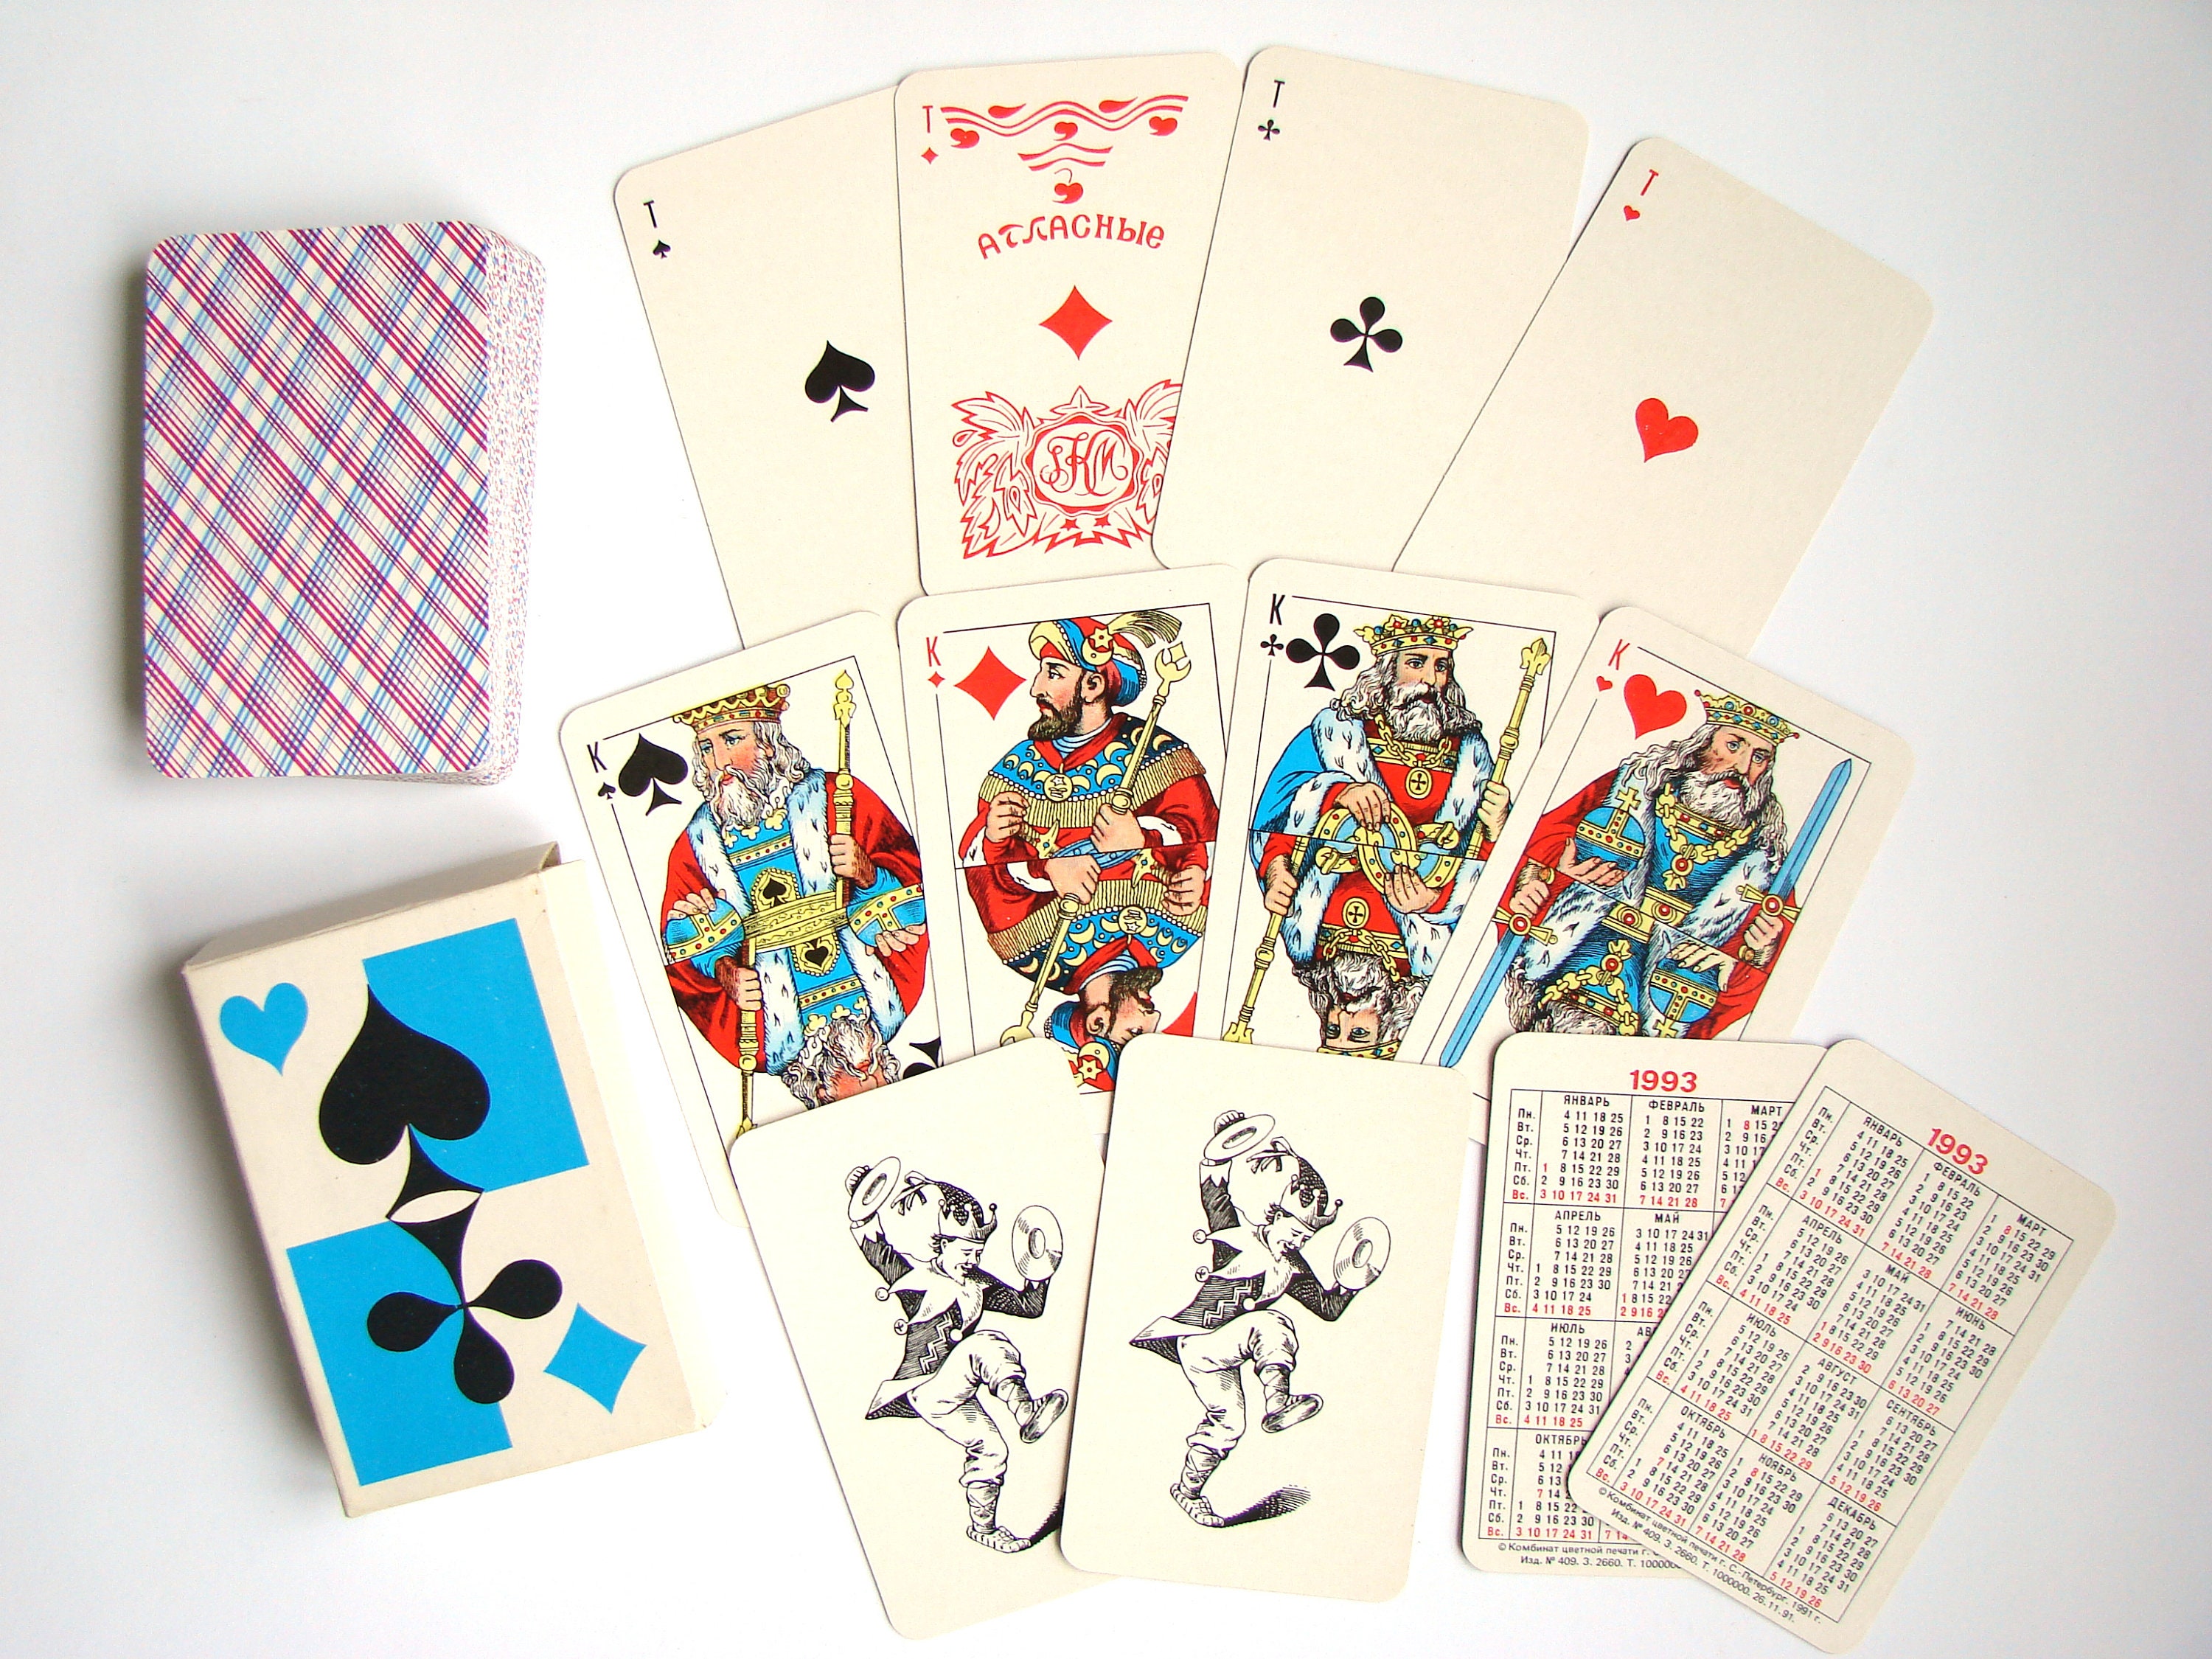 Cartes à jouer vierges - 6,5 x 10 cm, 36 cartes